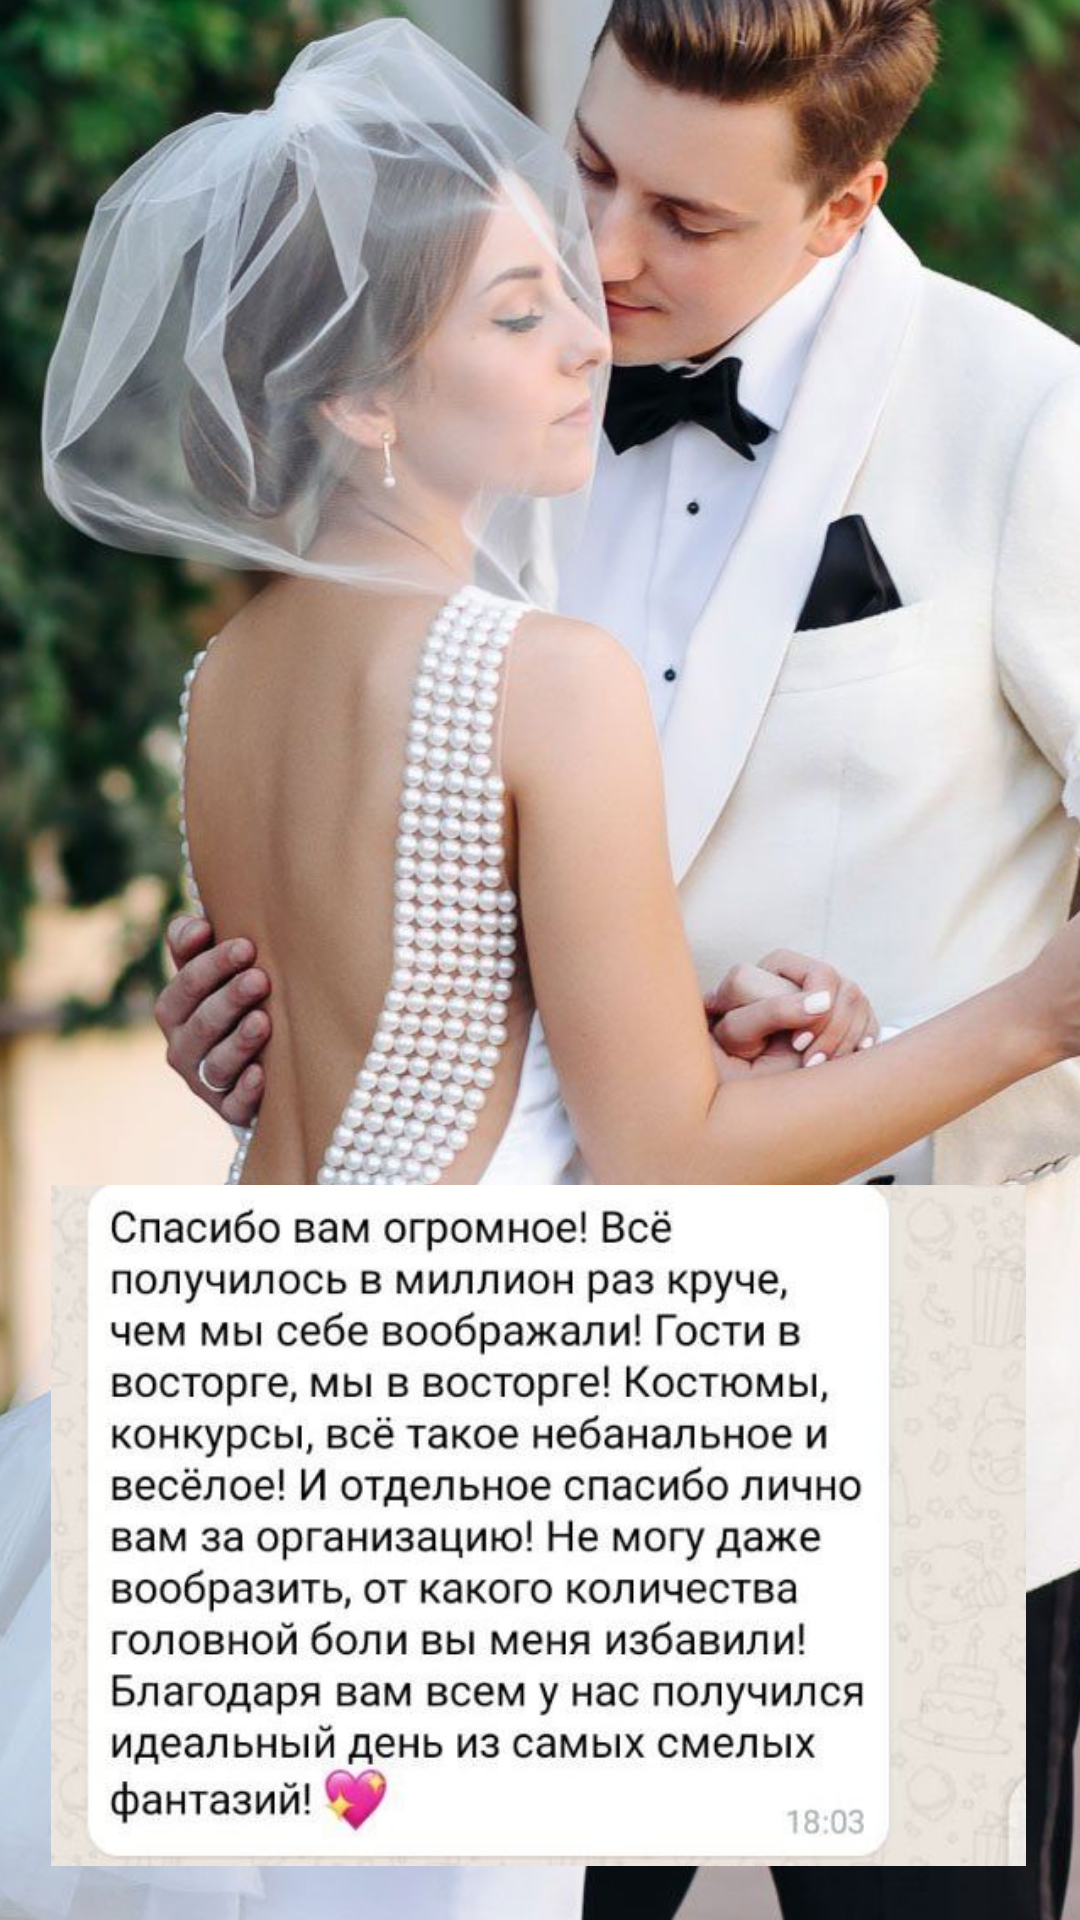 Организация свадьбы в Перми
от компании Pandaevent